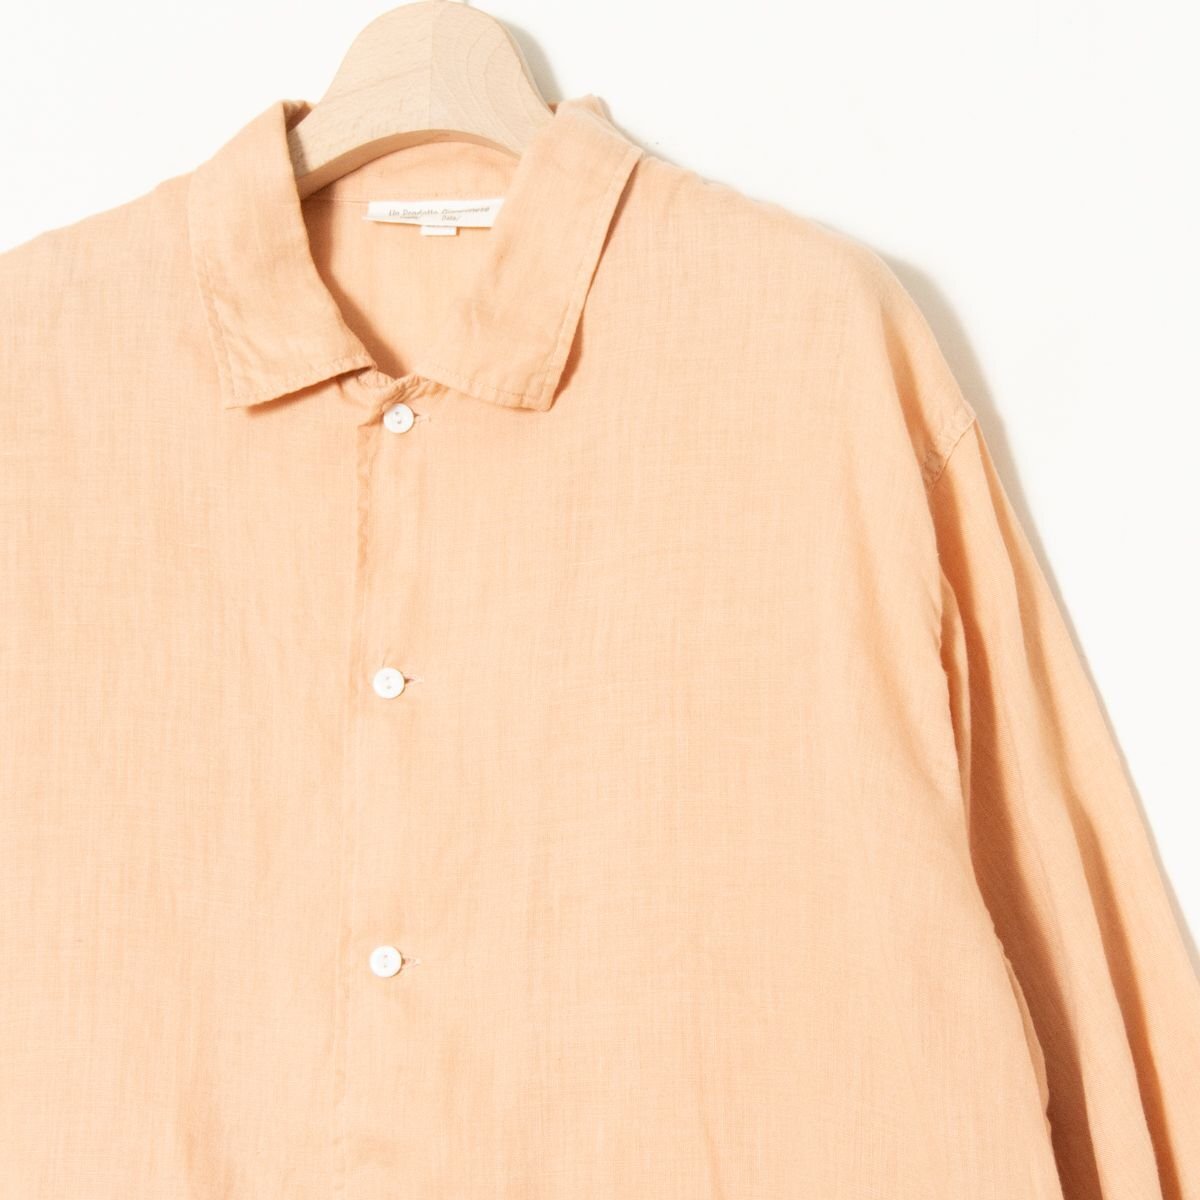 [1 иен старт ]ARTE POVERA arte Poe velalinen 7 минут рукав рубашка большой размер лен 100% натуральный одноцветный незначительный orange M сделано в Японии весна лето 